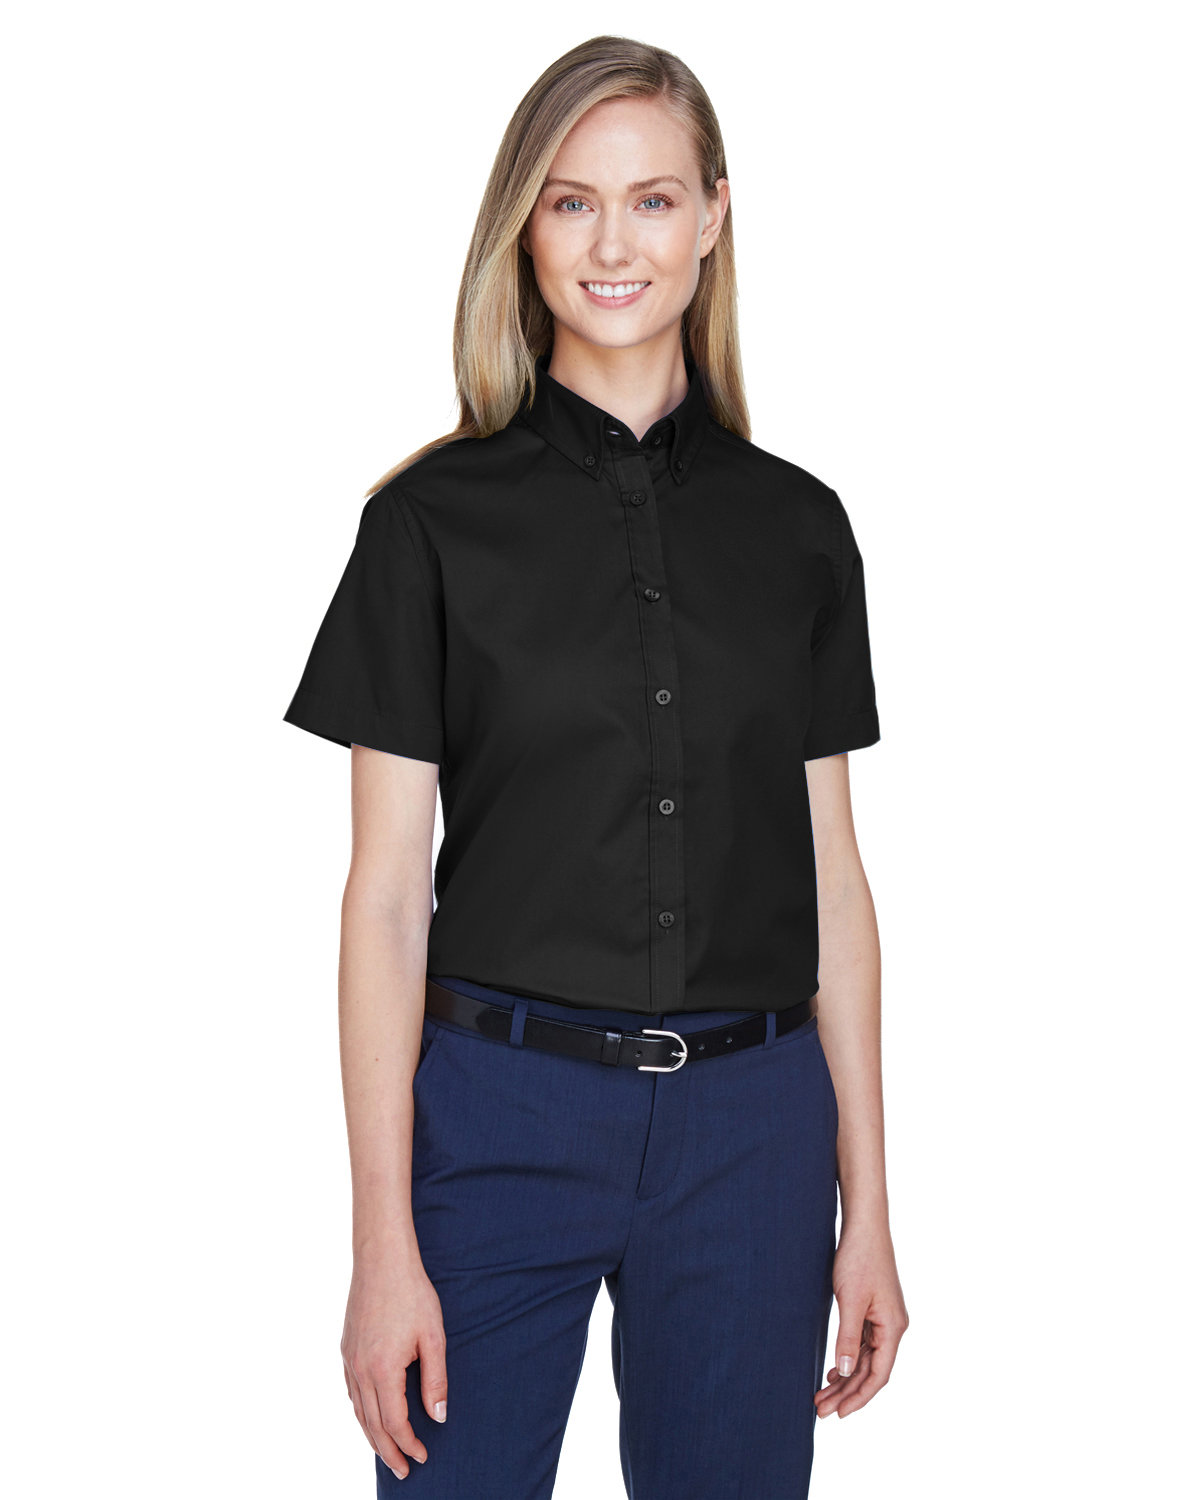 Core 365 78194 - Ladies' Optimum Short Sleeve Twill Shirt